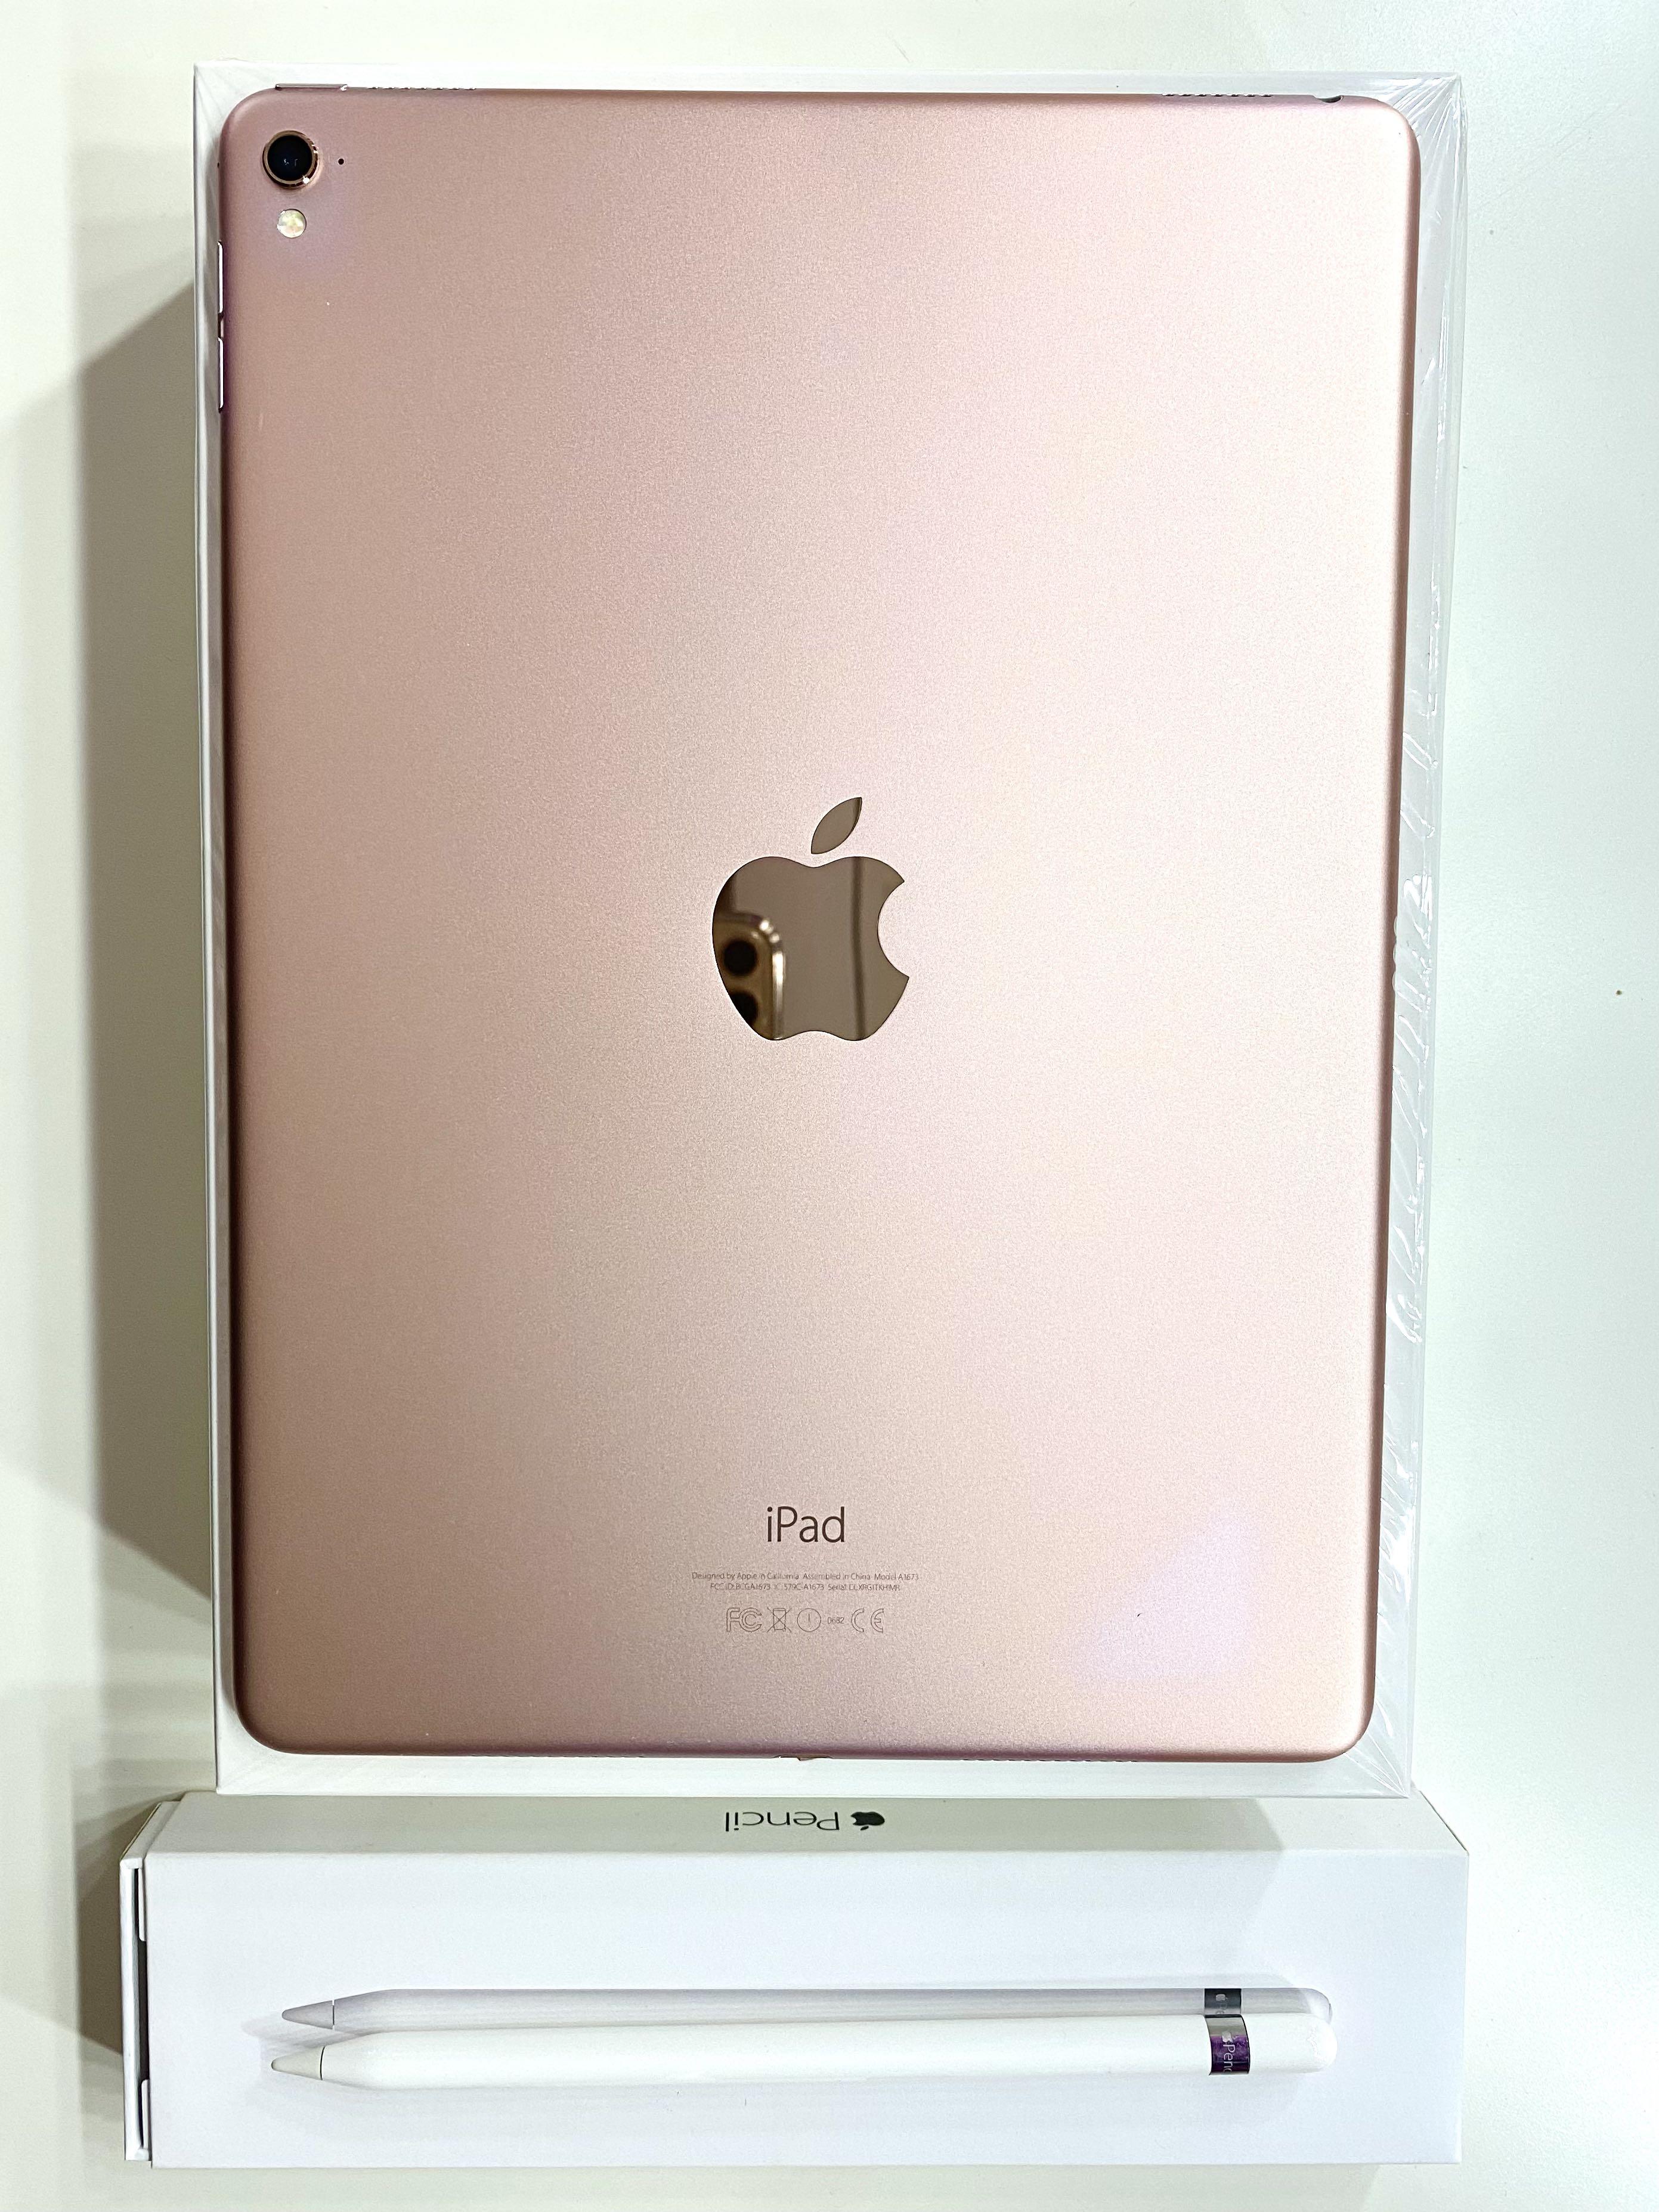 APPLE iPad Pro IPAD PRO 9.7 WI-FI 128GB…